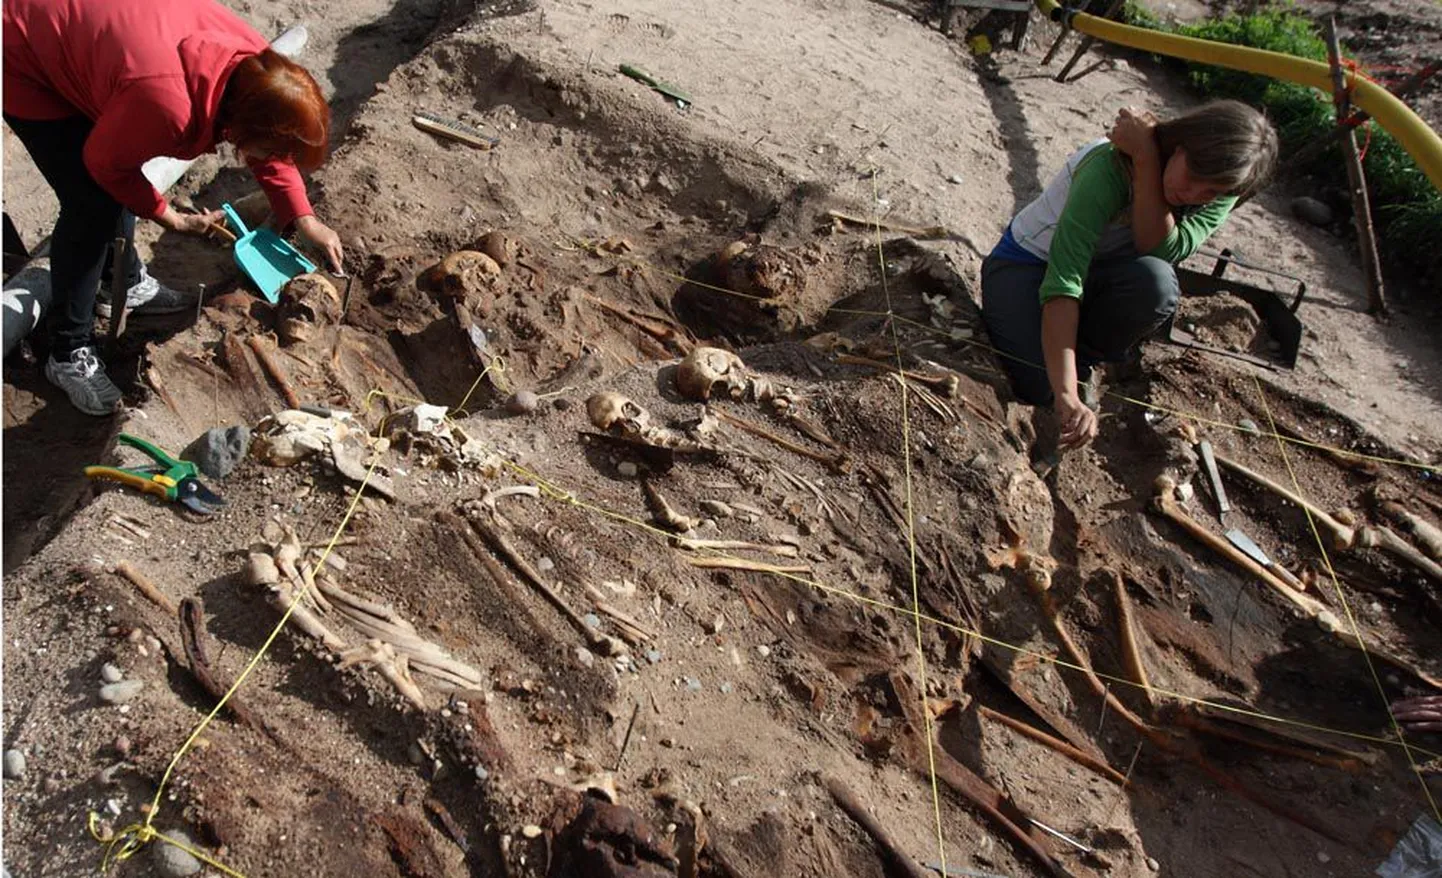 В результате раскопок, проведенных в Сальме в этом году, археологи обнаружили еще 26 скелетов скандинавских воинов. Захороненные в три слоя воины покоятся вместе с мечами, что указывает на их знатное происхождение.